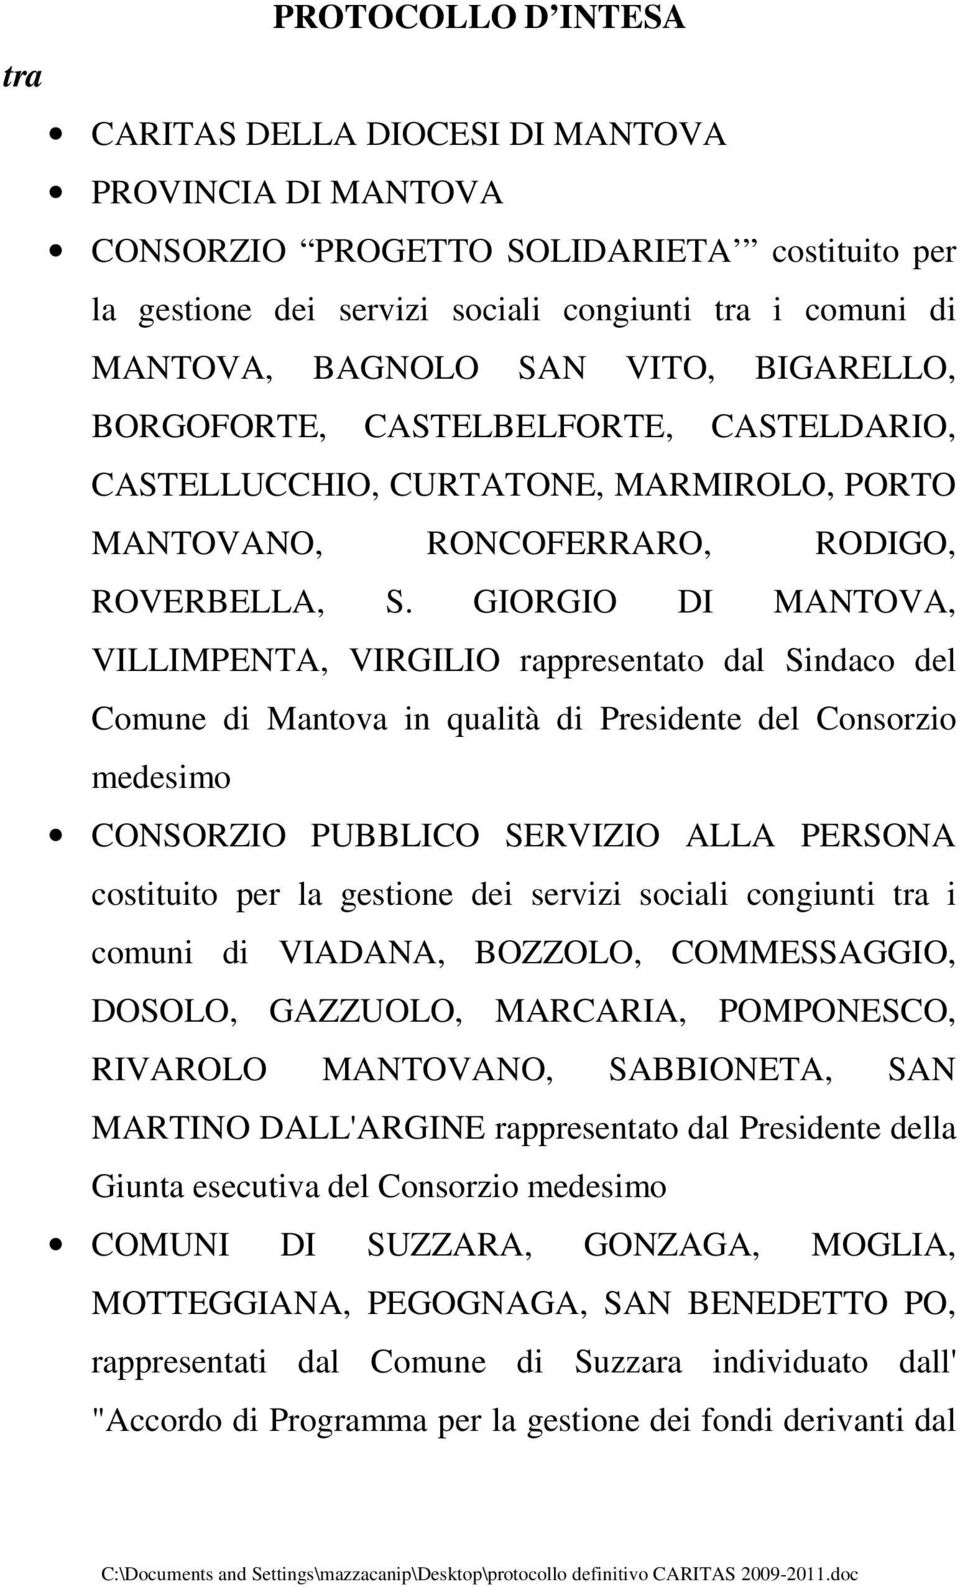 GIORGIO DI MANTOVA, VILLIMPENTA, VIRGILIO rappresentato dal Sindaco del Comune di Mantova in qualità di Presidente del Consorzio medesimo CONSORZIO PUBBLICO SERVIZIO ALLA PERSONA costituito per la